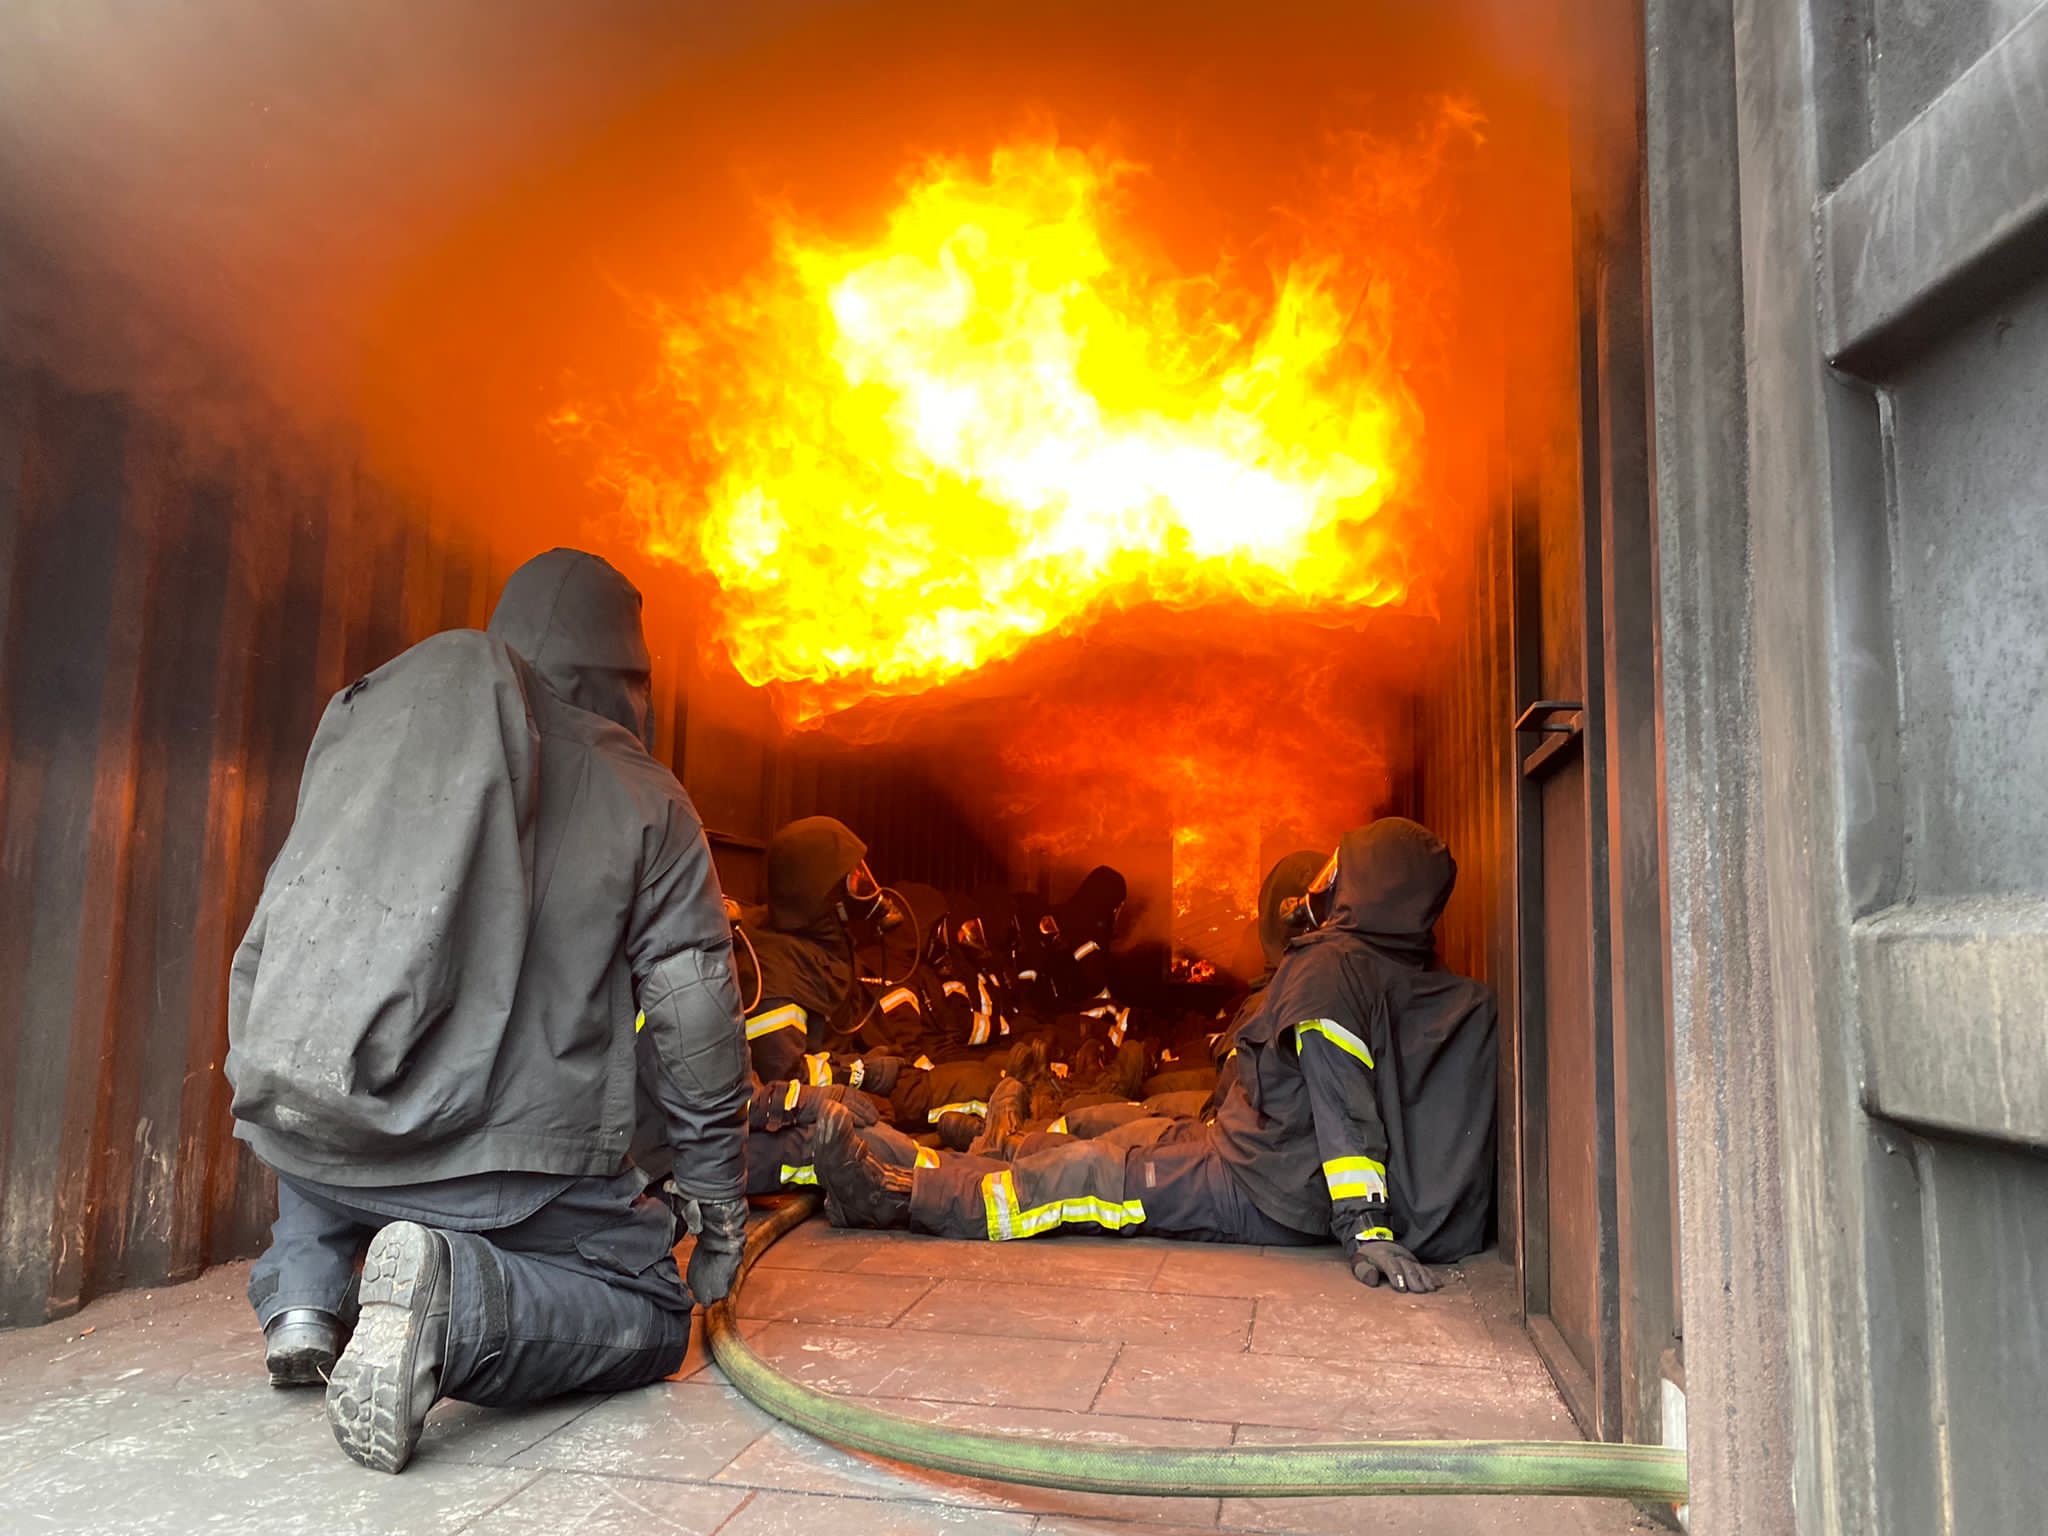 Einsatzfoto Realitätsnahe Ausbildung in Brandübungscontainern ist eine der wichtigsten Ausbildungsinhalte im Laufe der Schulung von Feuerwehrangehörigen.